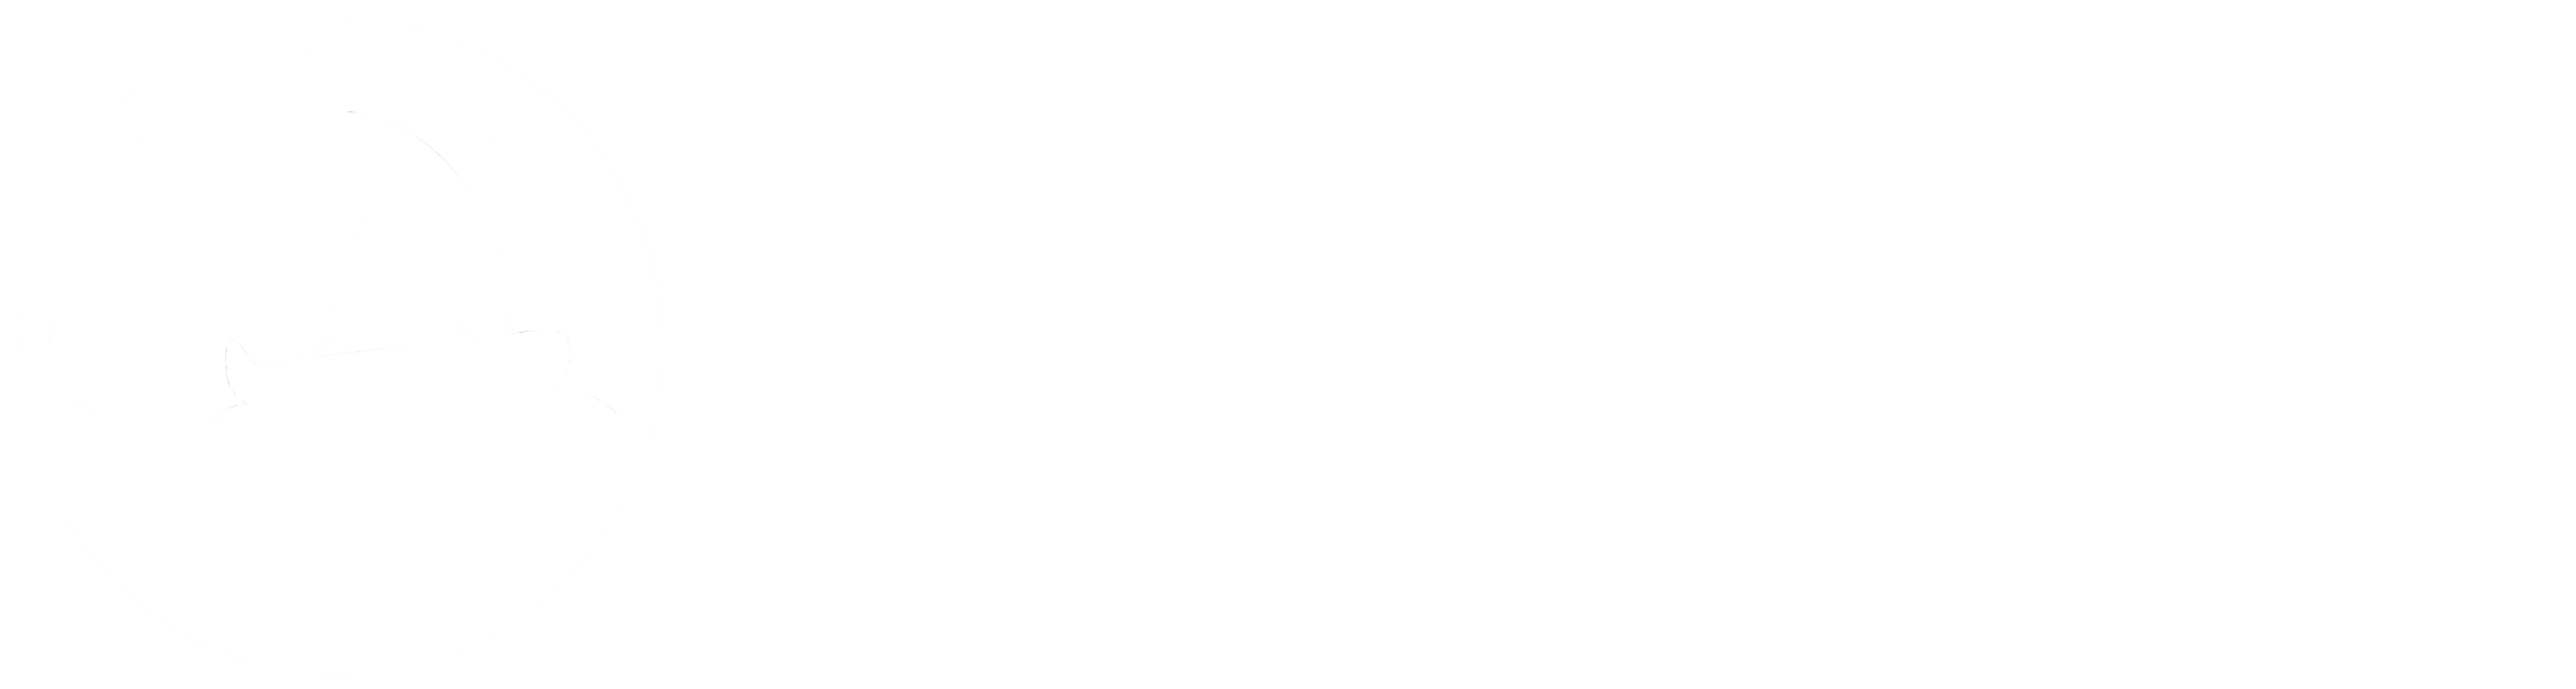 A Generation Adrift